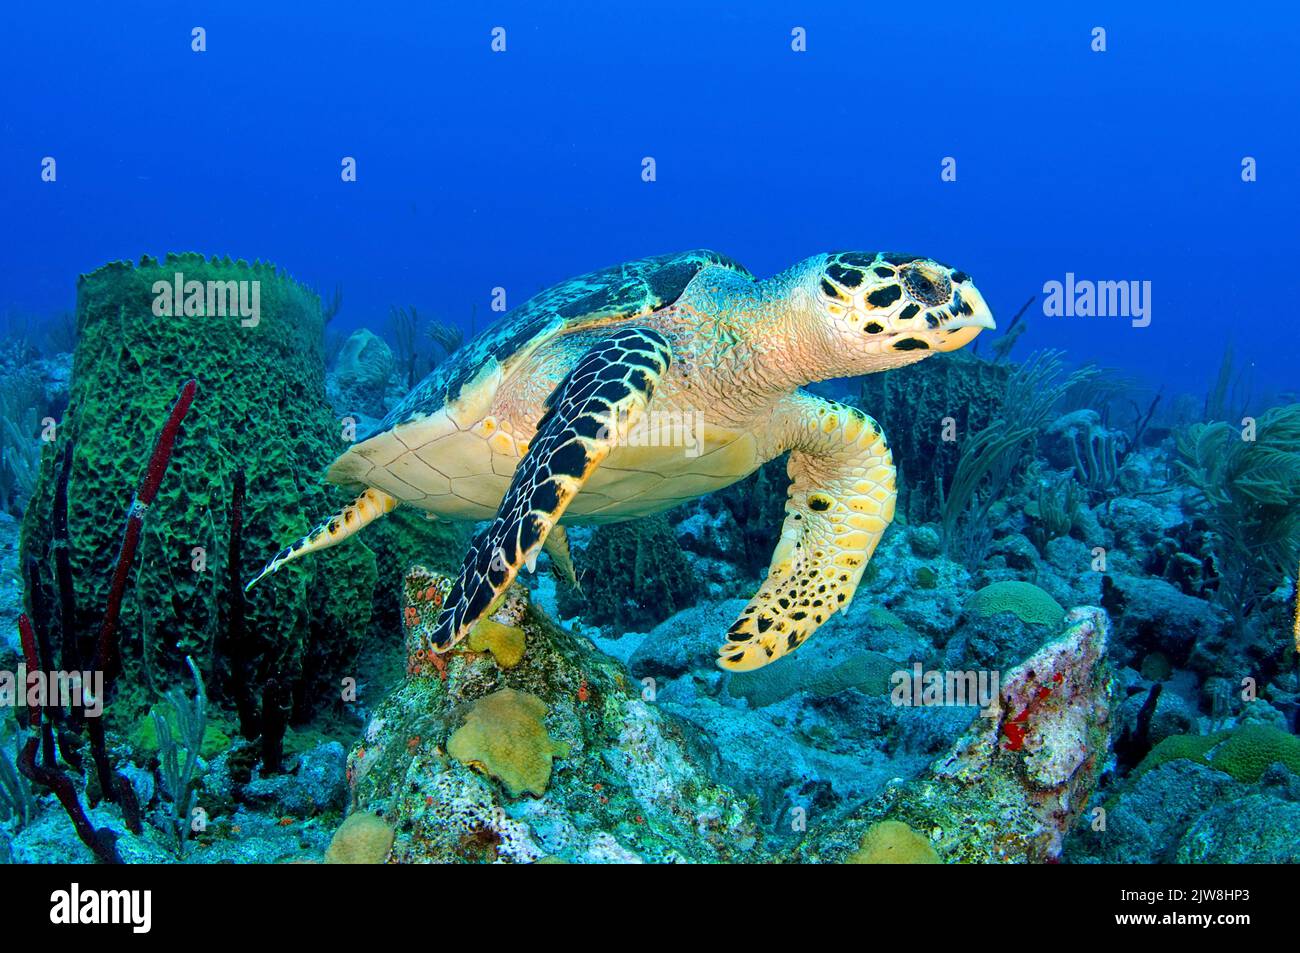 Hawksbill Turtle (Eretmochelys imbricata) in una barriera corallina dei caraibi, Statia, St. Eustatius, Caraibi. Foto Stock